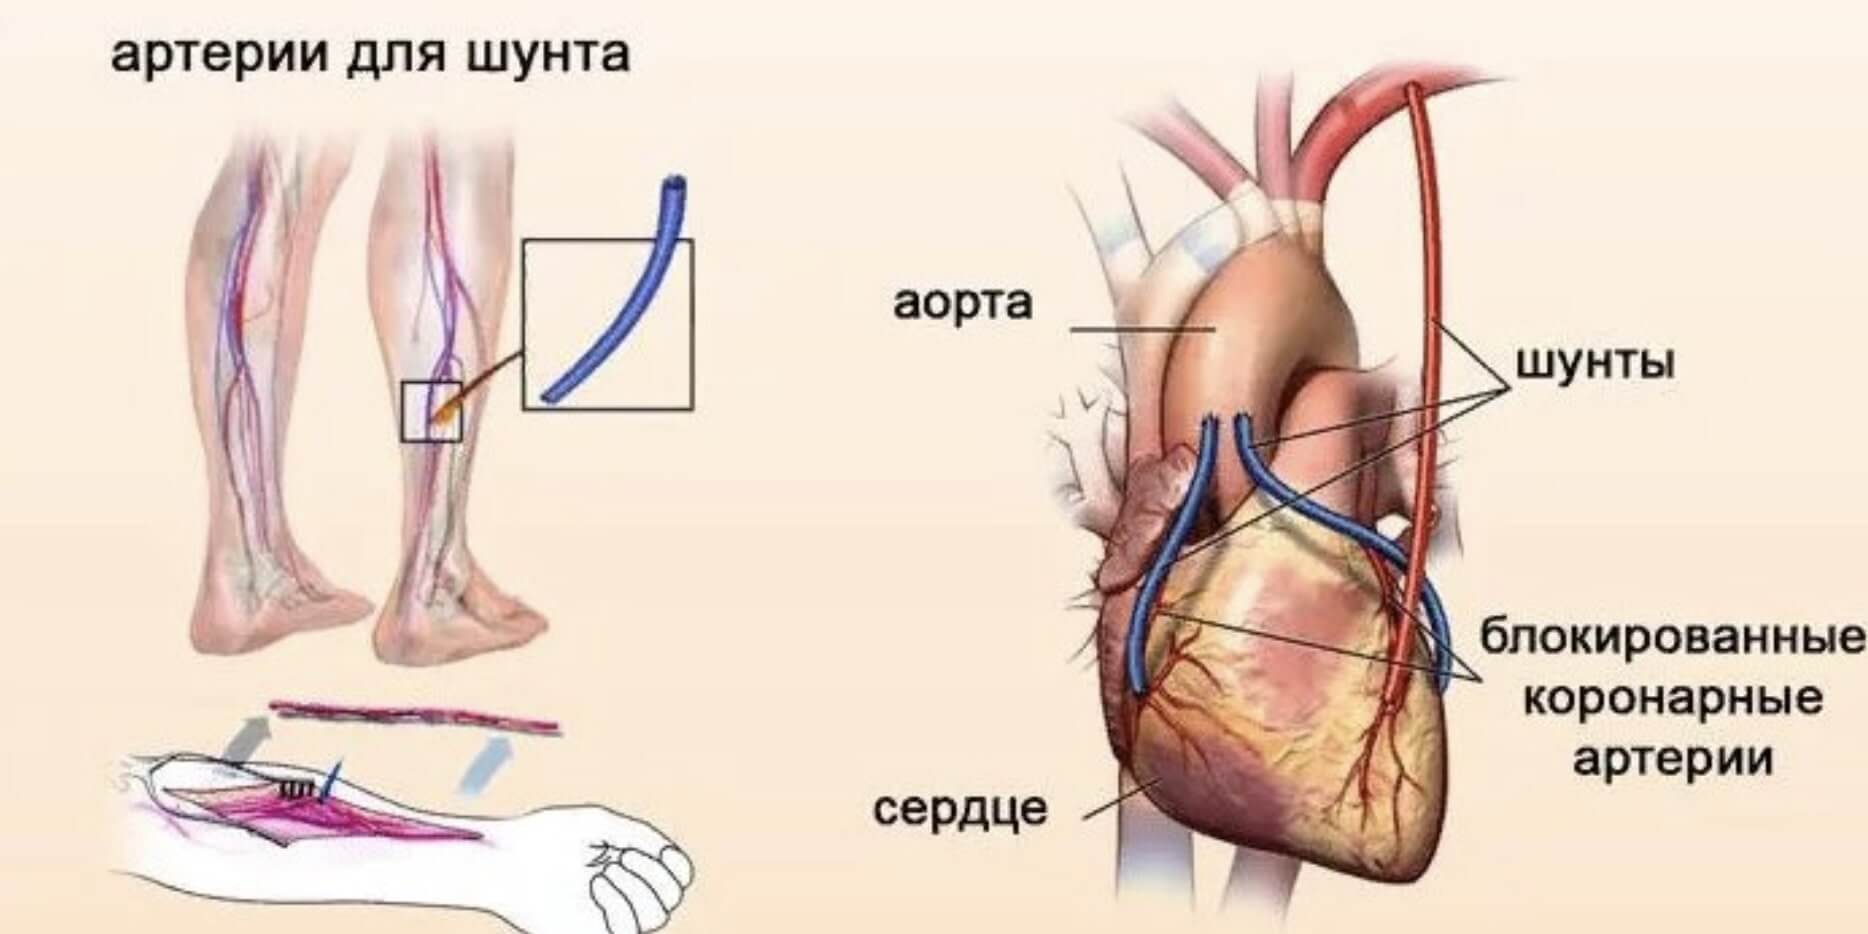 Шунт в медицине. Аортокоронарное шунтирование схема операции. Шунтирование сосудов при инфаркте миокарда. Коронарное шунтирование сосудов сердца. Операция шунтирование сердца инфаркт.